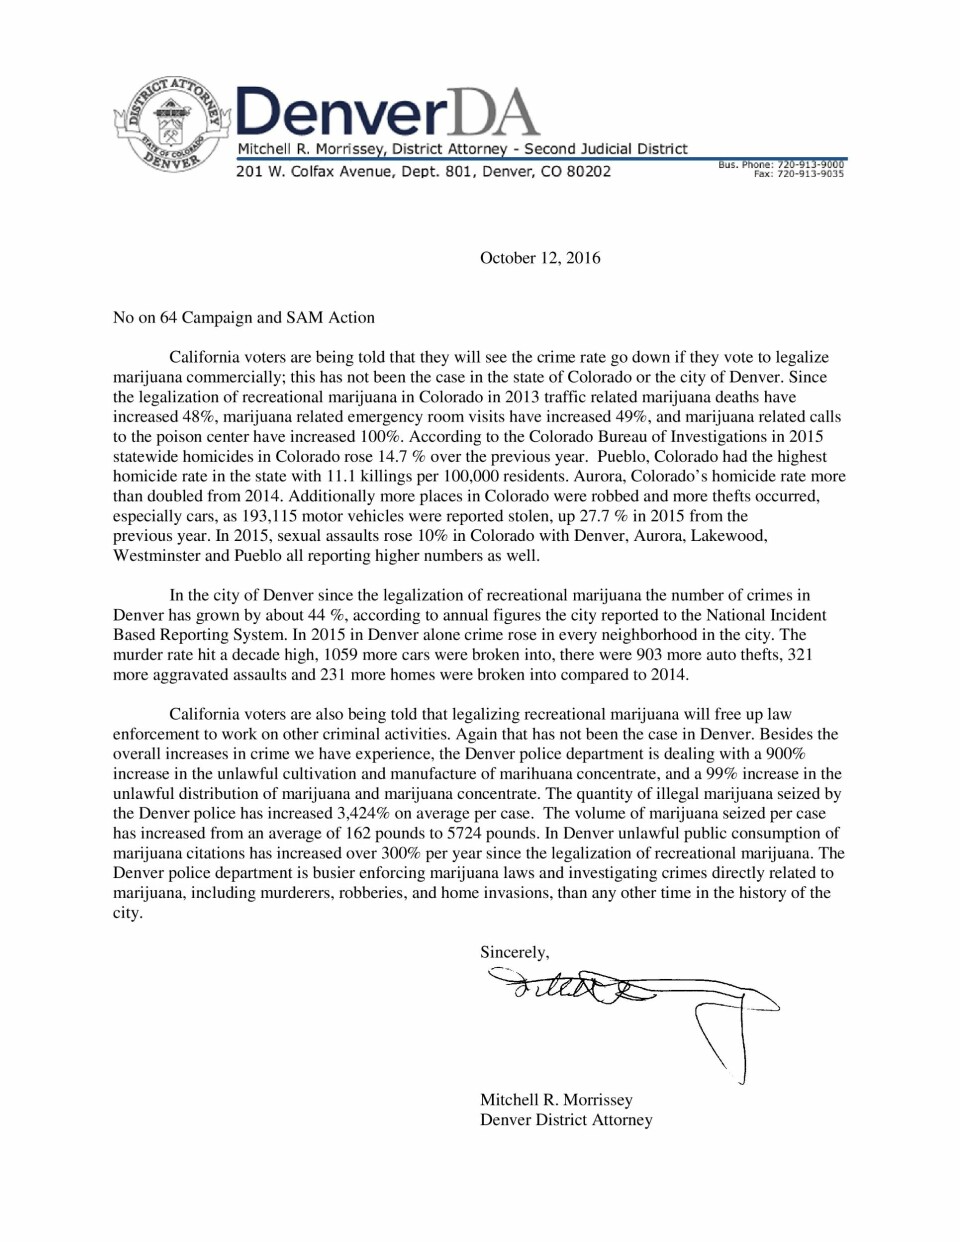 Brevet fra statsadvokaten i Denver til borgergrupper i California. Trykk på bildet for å se det i større versjon.